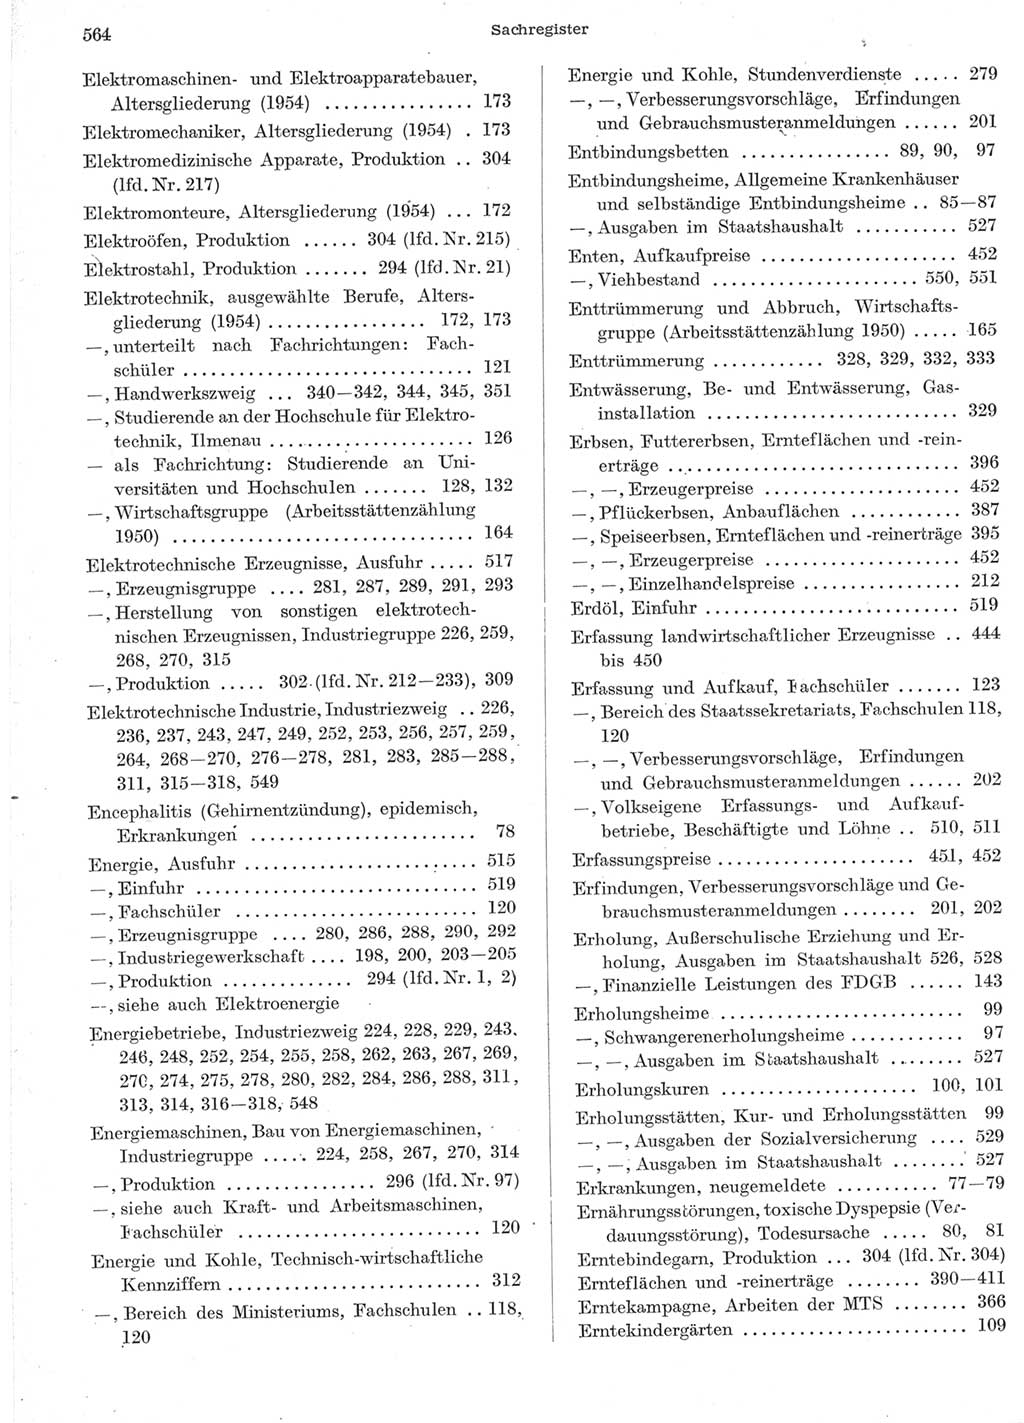 Statistisches Jahrbuch der Deutschen Demokratischen Republik (DDR) 1957, Seite 564 (Stat. Jb. DDR 1957, S. 564)